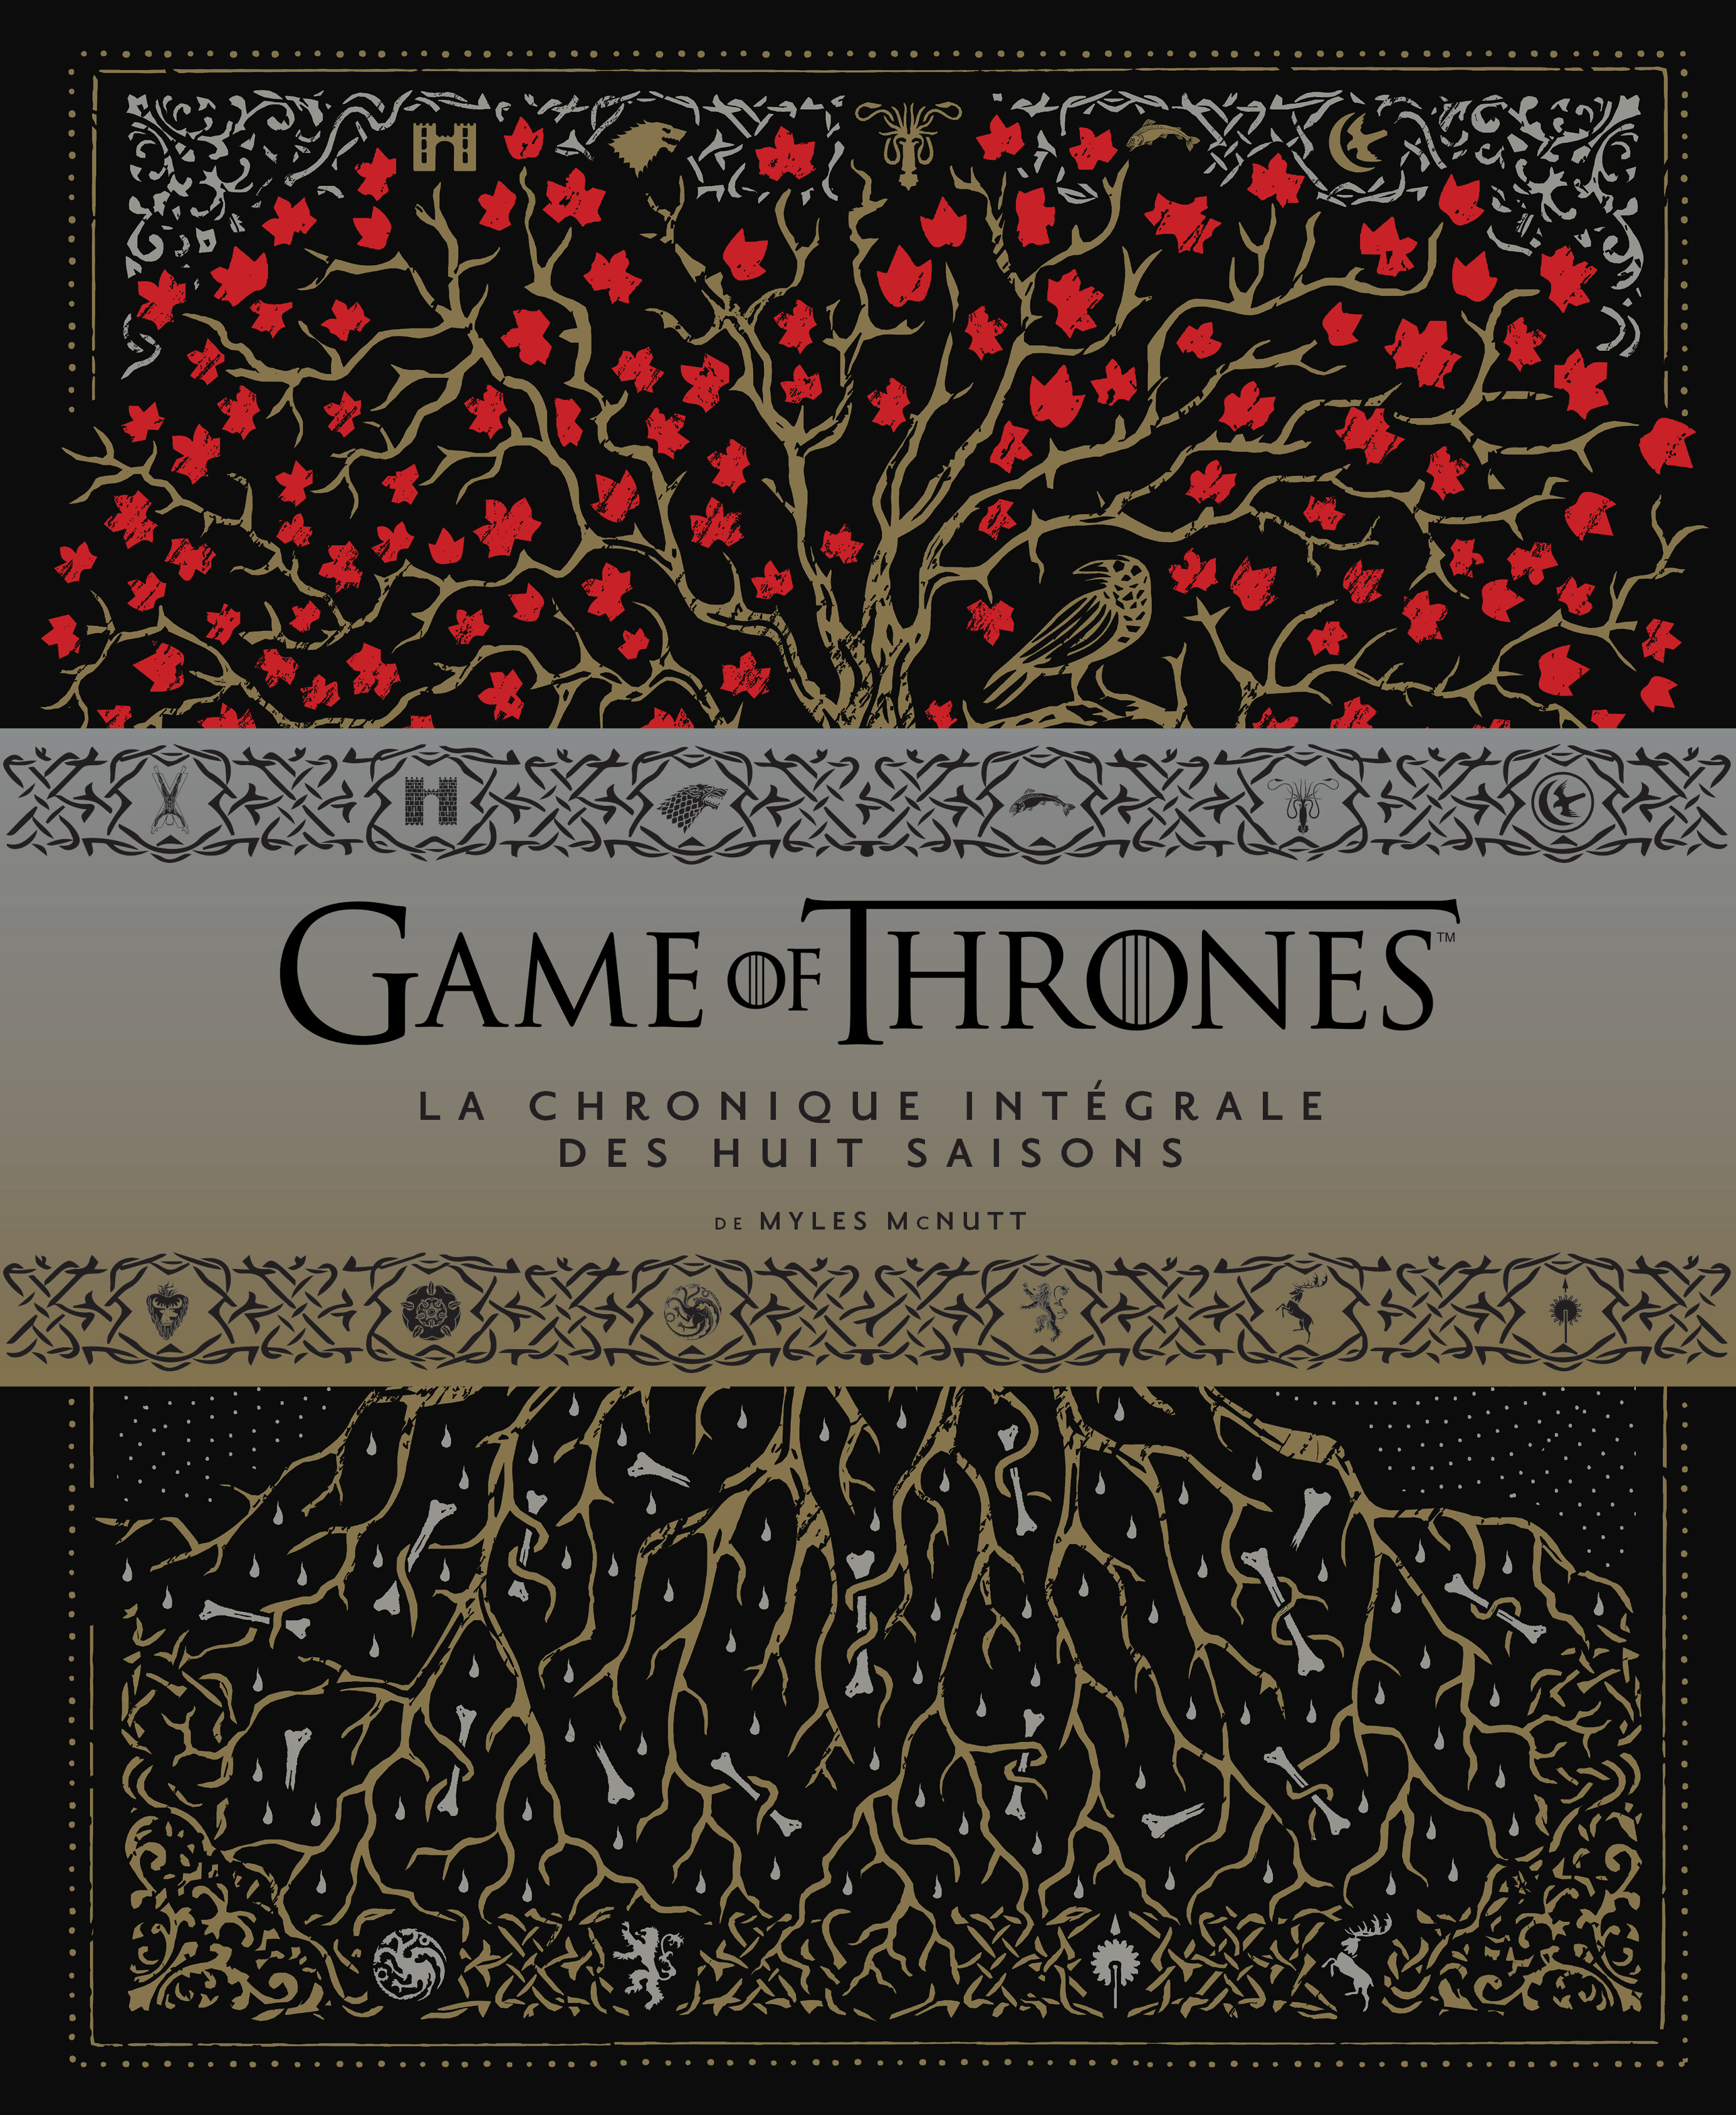 Game of Thrones, la chronique intégrale des huit saisons - couv